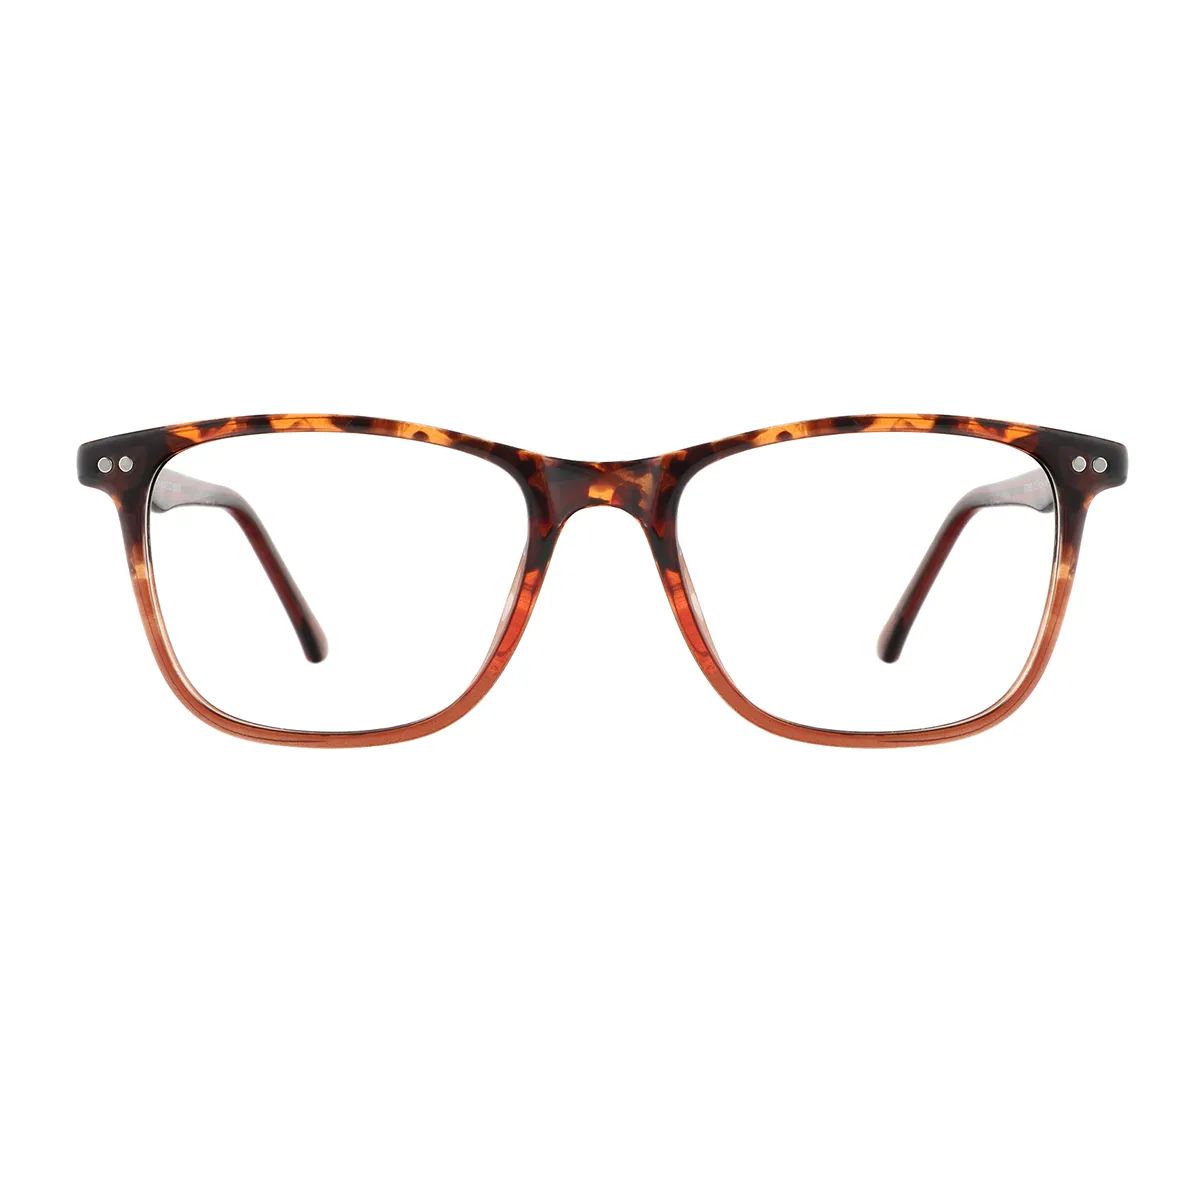 Gibbons - Square Tortoiseshell Glasses for Men & Women - EFE